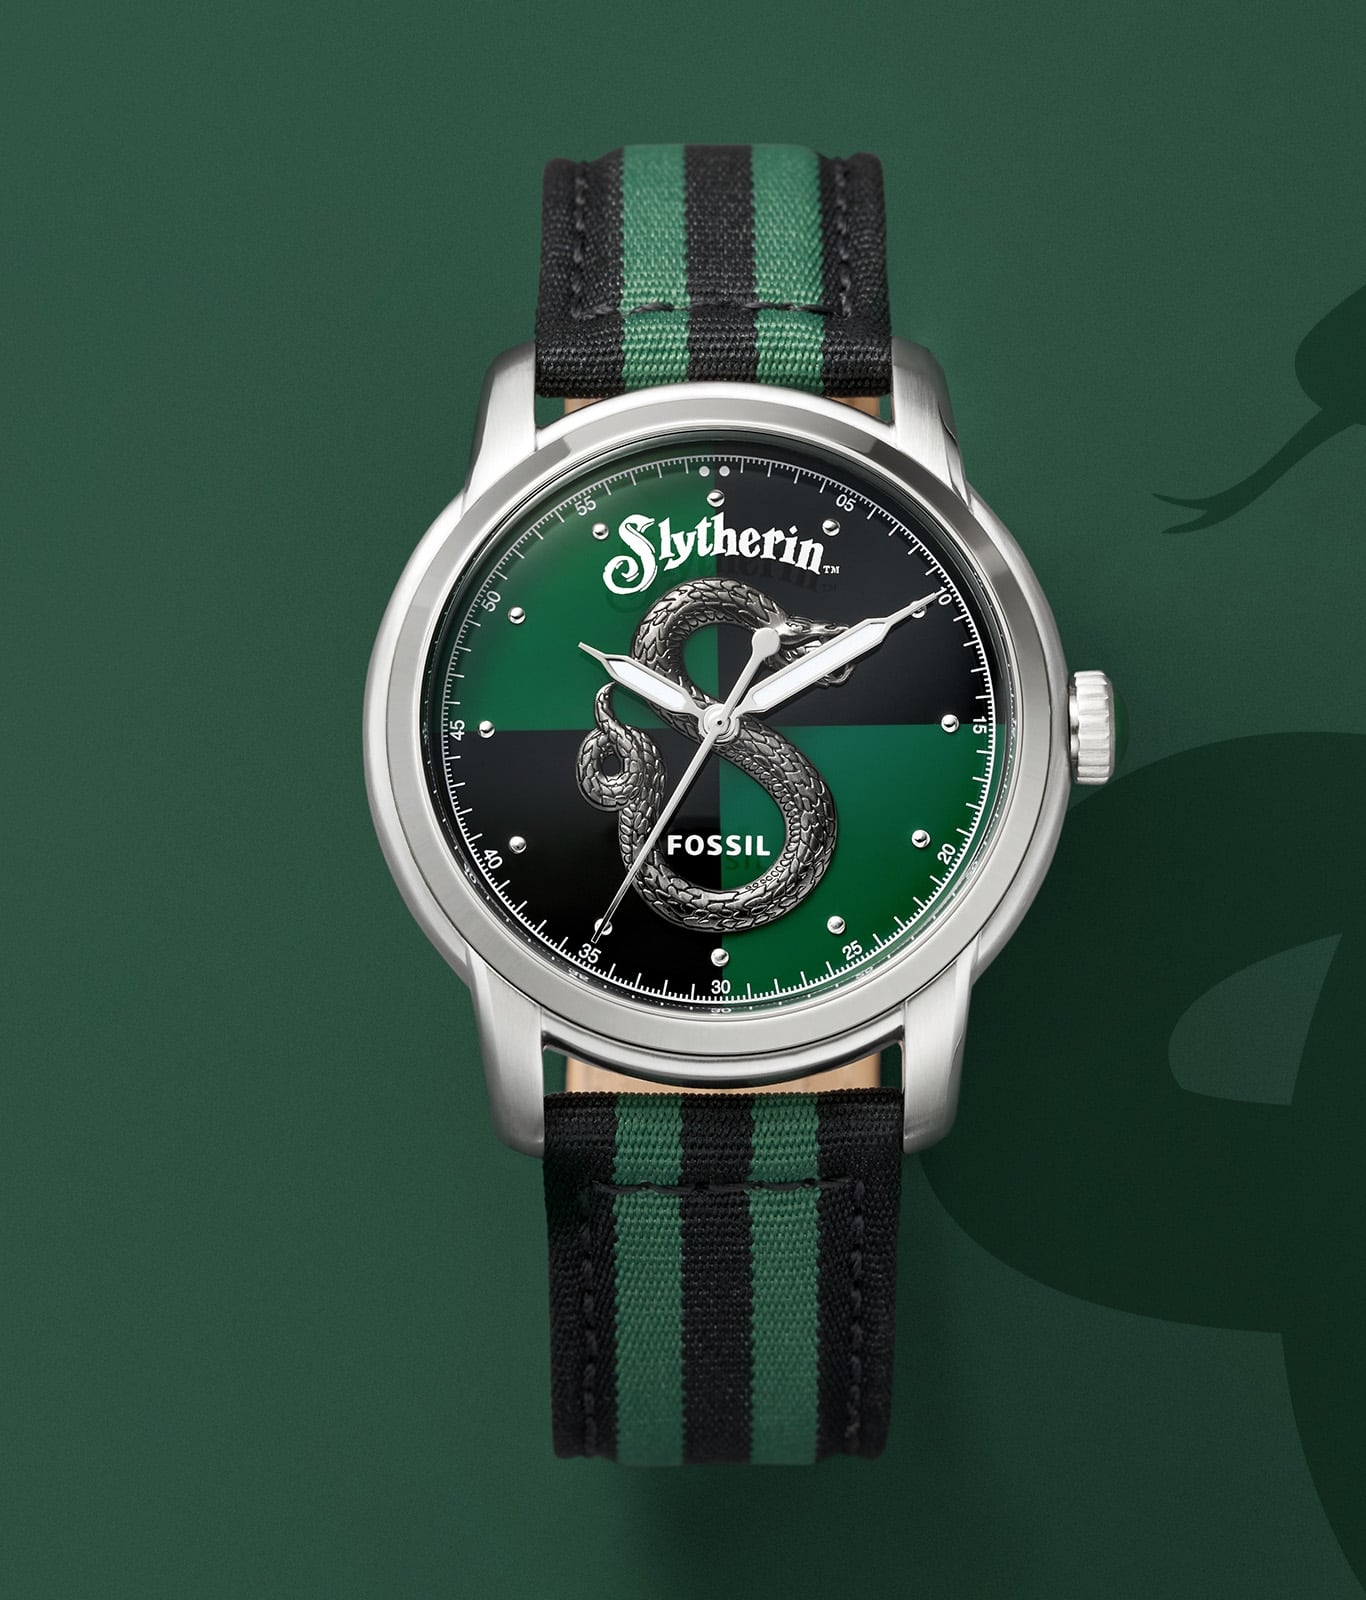 Silberfarbene Slytherin-Uhr mit grün-schwarzem Band.